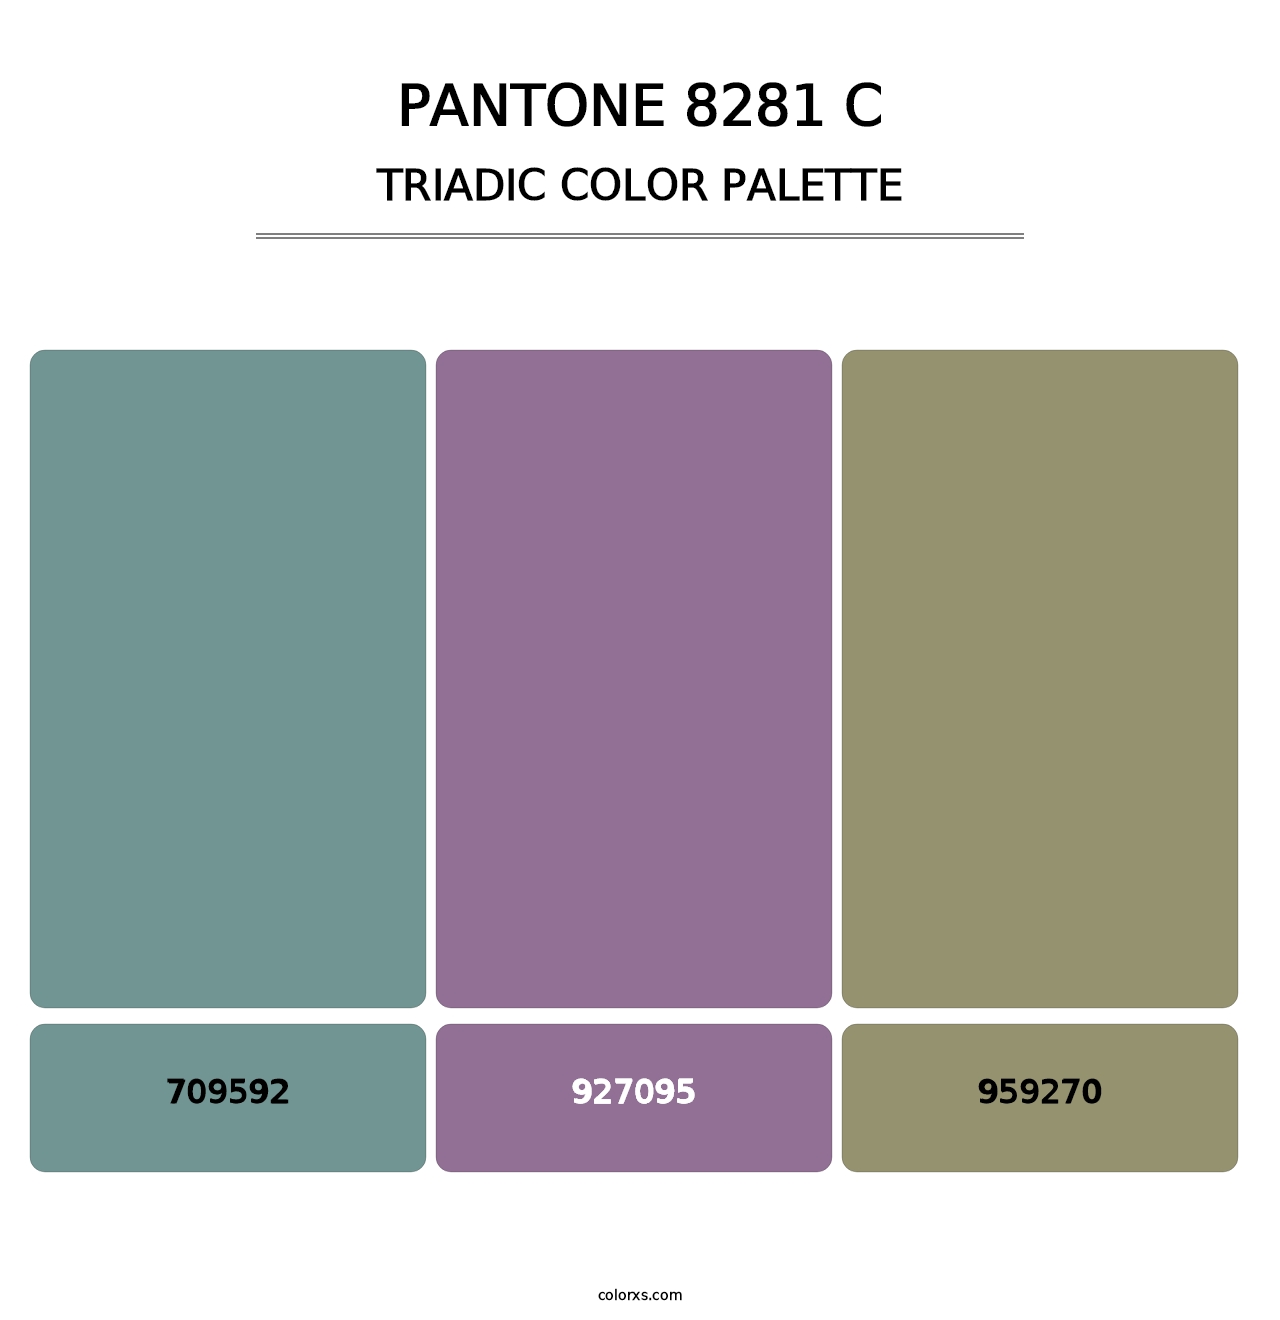 PANTONE 8281 C - Triadic Color Palette